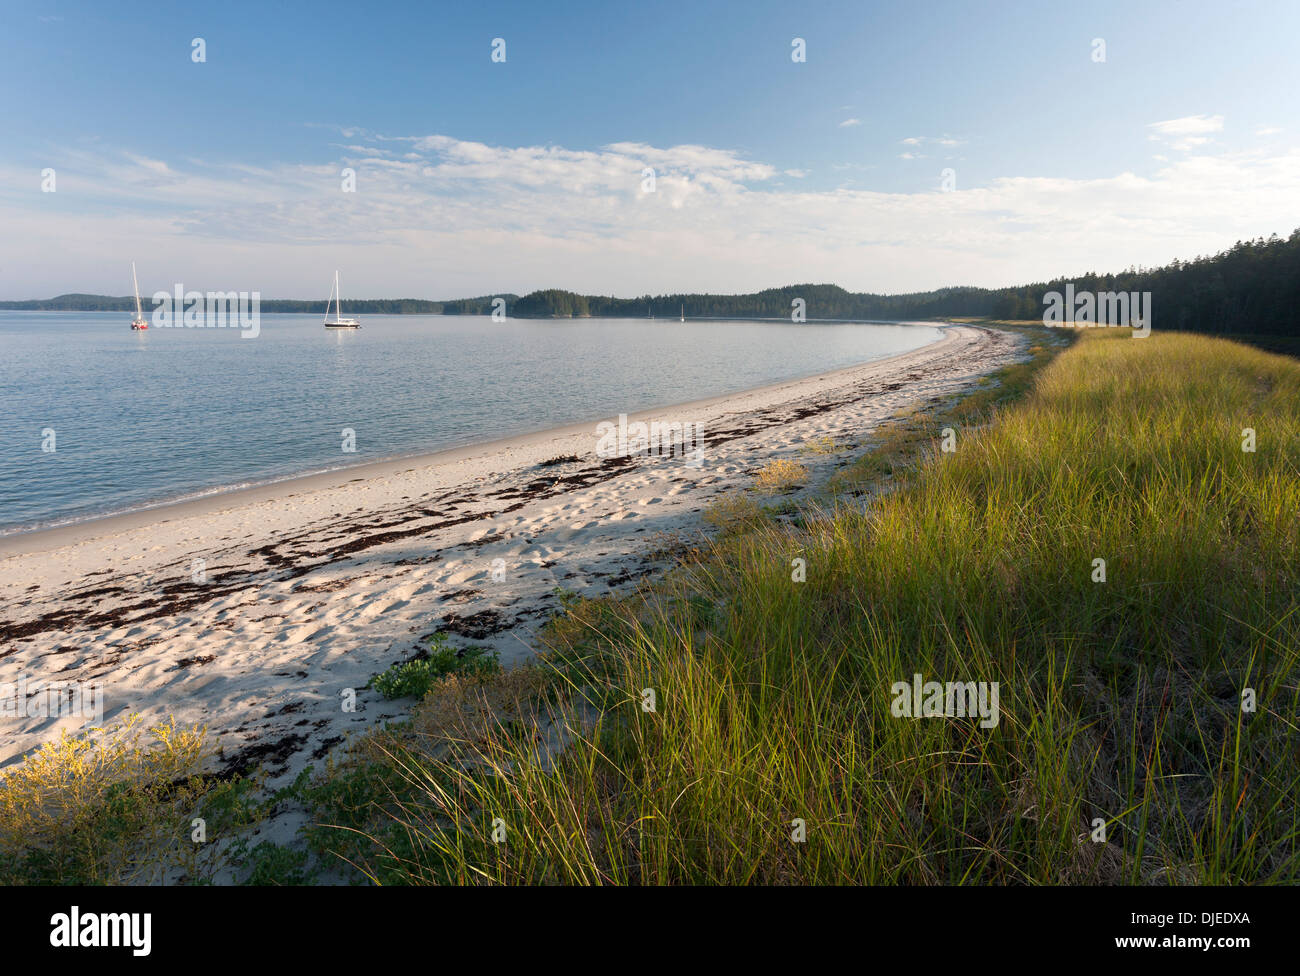 Una lunga e splendida mezzaluna di sabbia bianca e di erba a Spiaggia Grande, Roque Island, Maine, Stati Uniti d'America e numerose barche a vela ancorate vicino ad essa Foto Stock